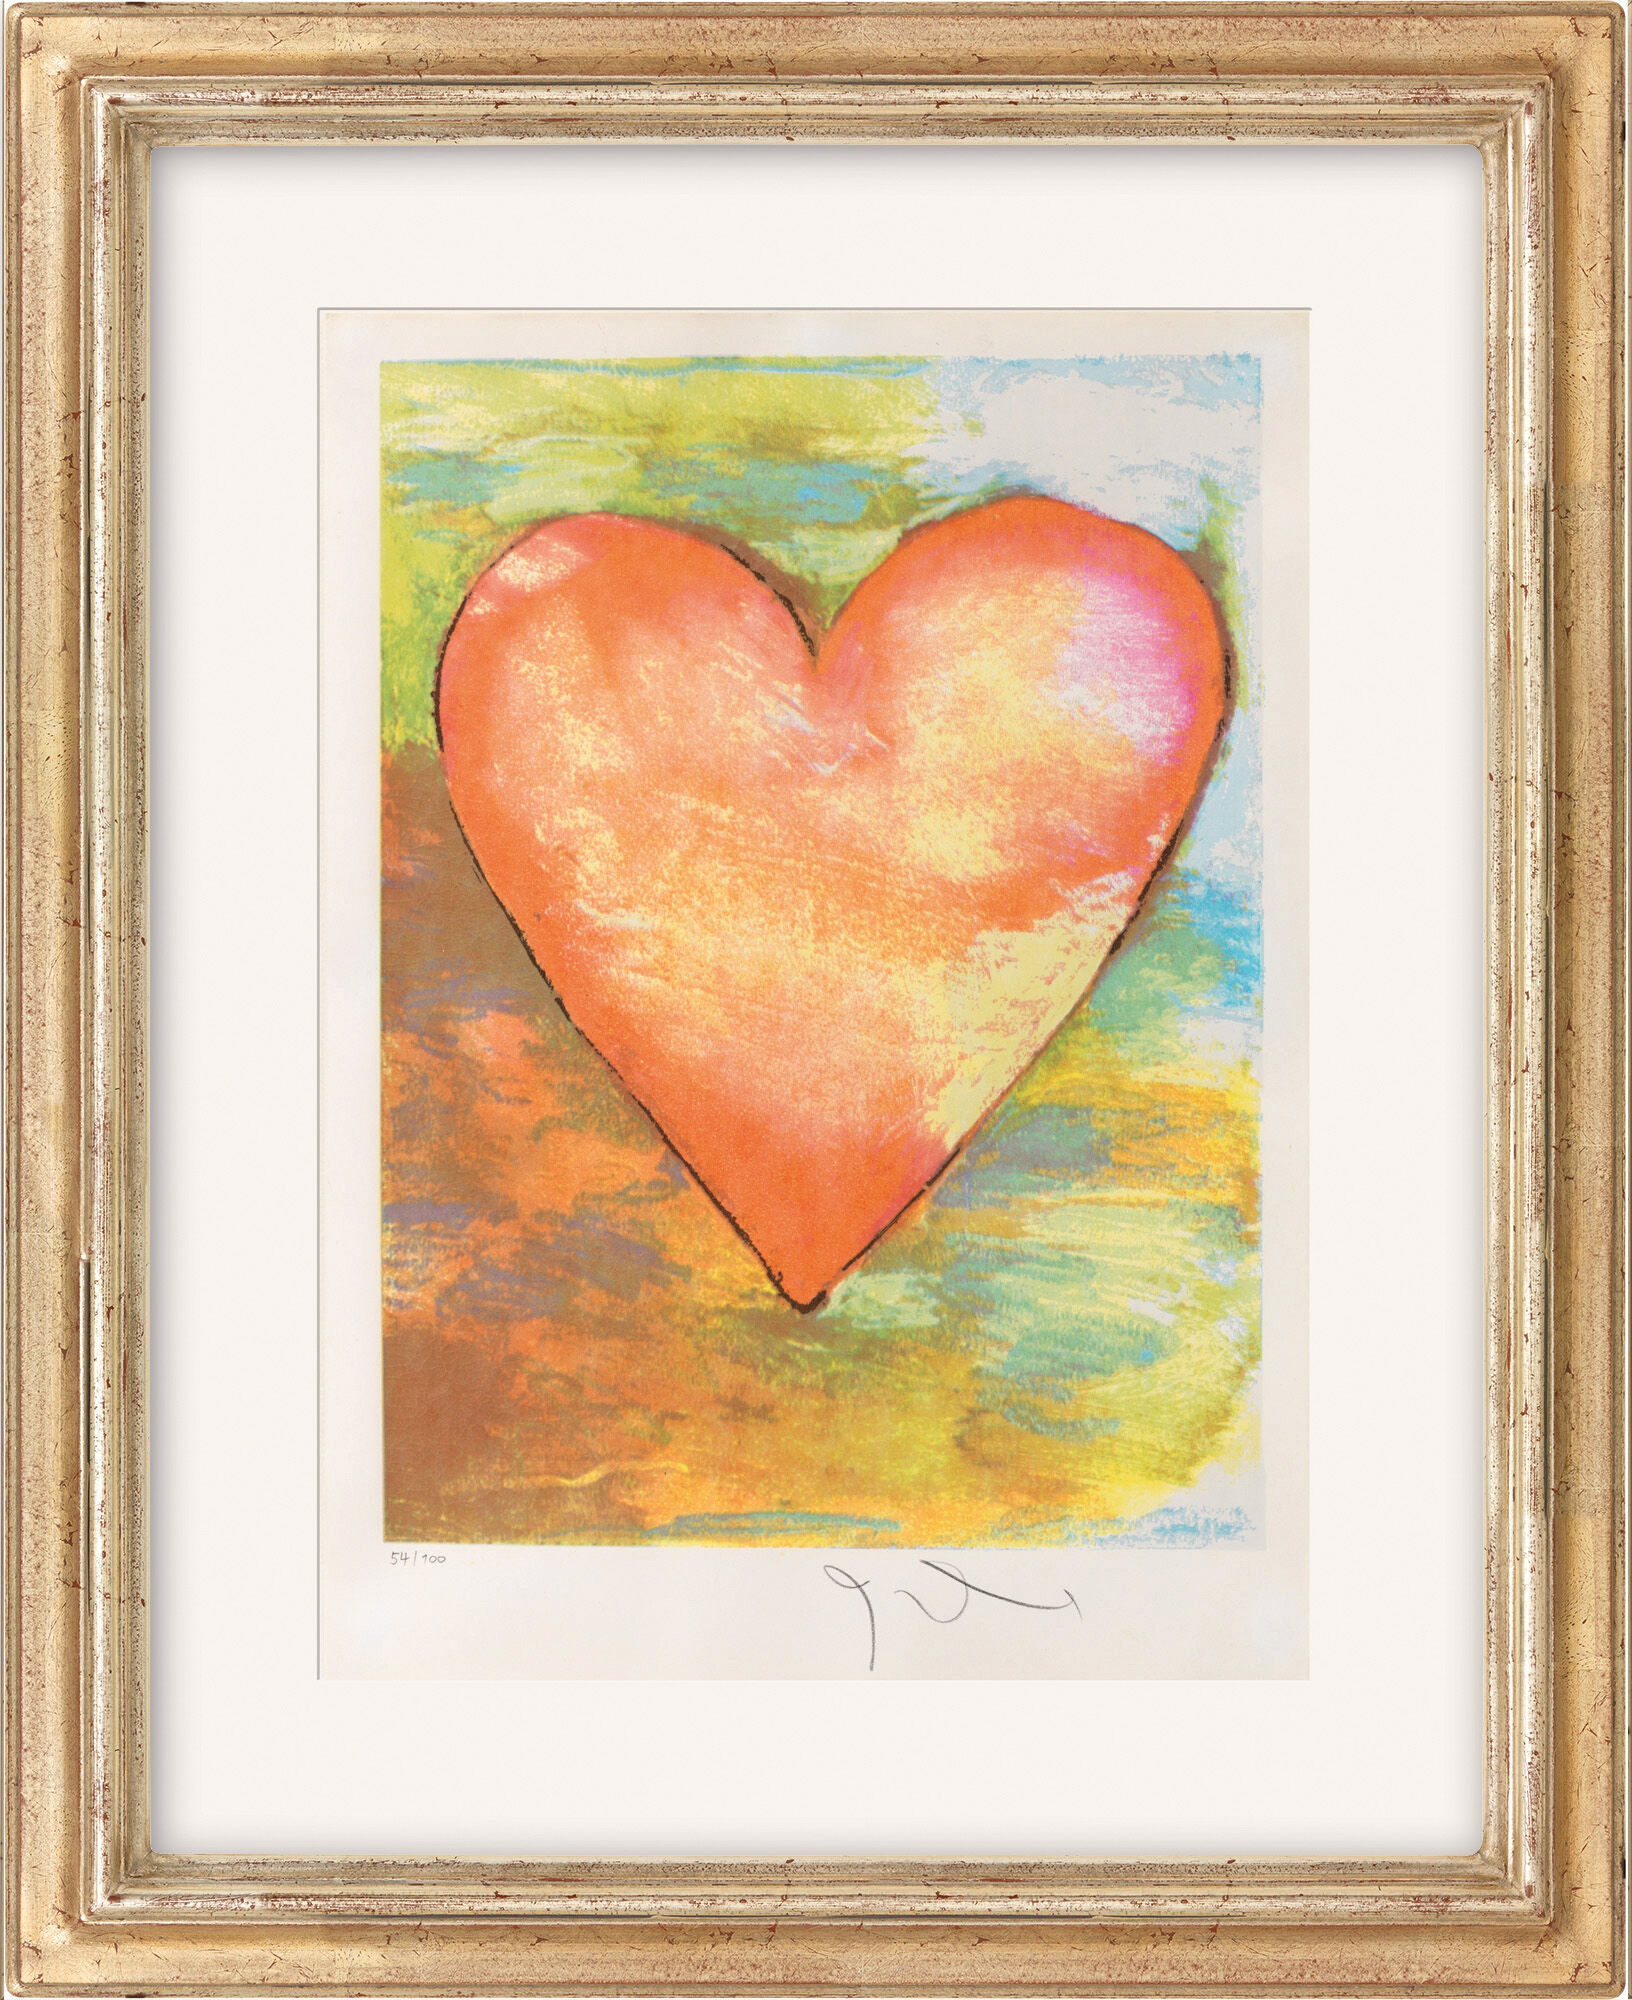 Billedet "Heart" (1971) von Jim Dine